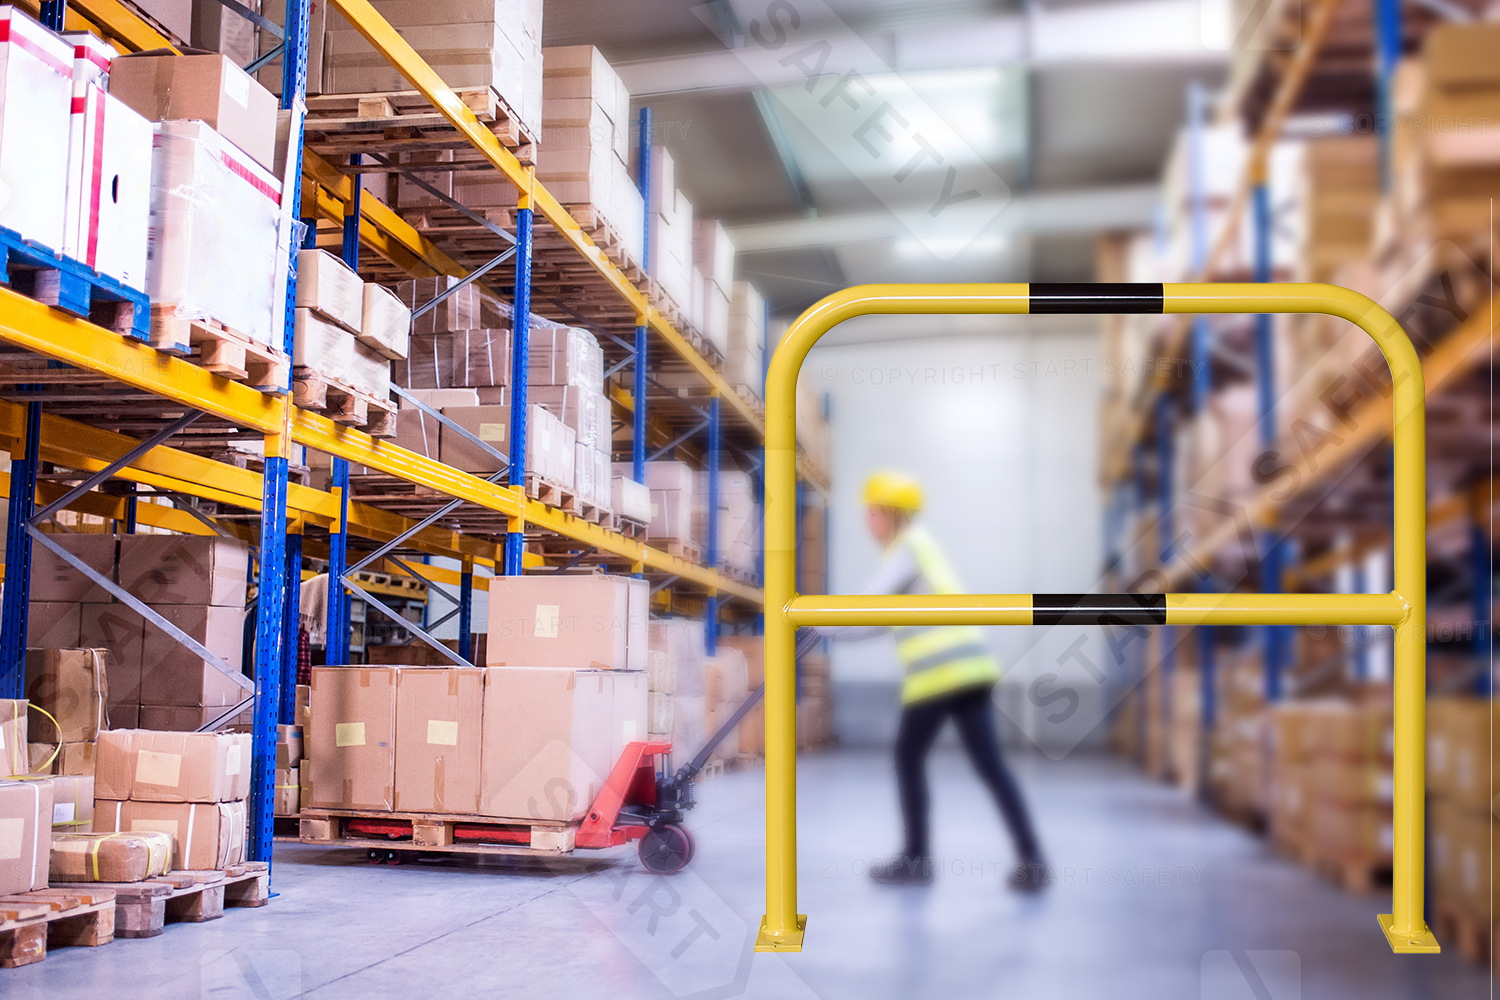 Steel Hoop Barrier In Warehouse Environment